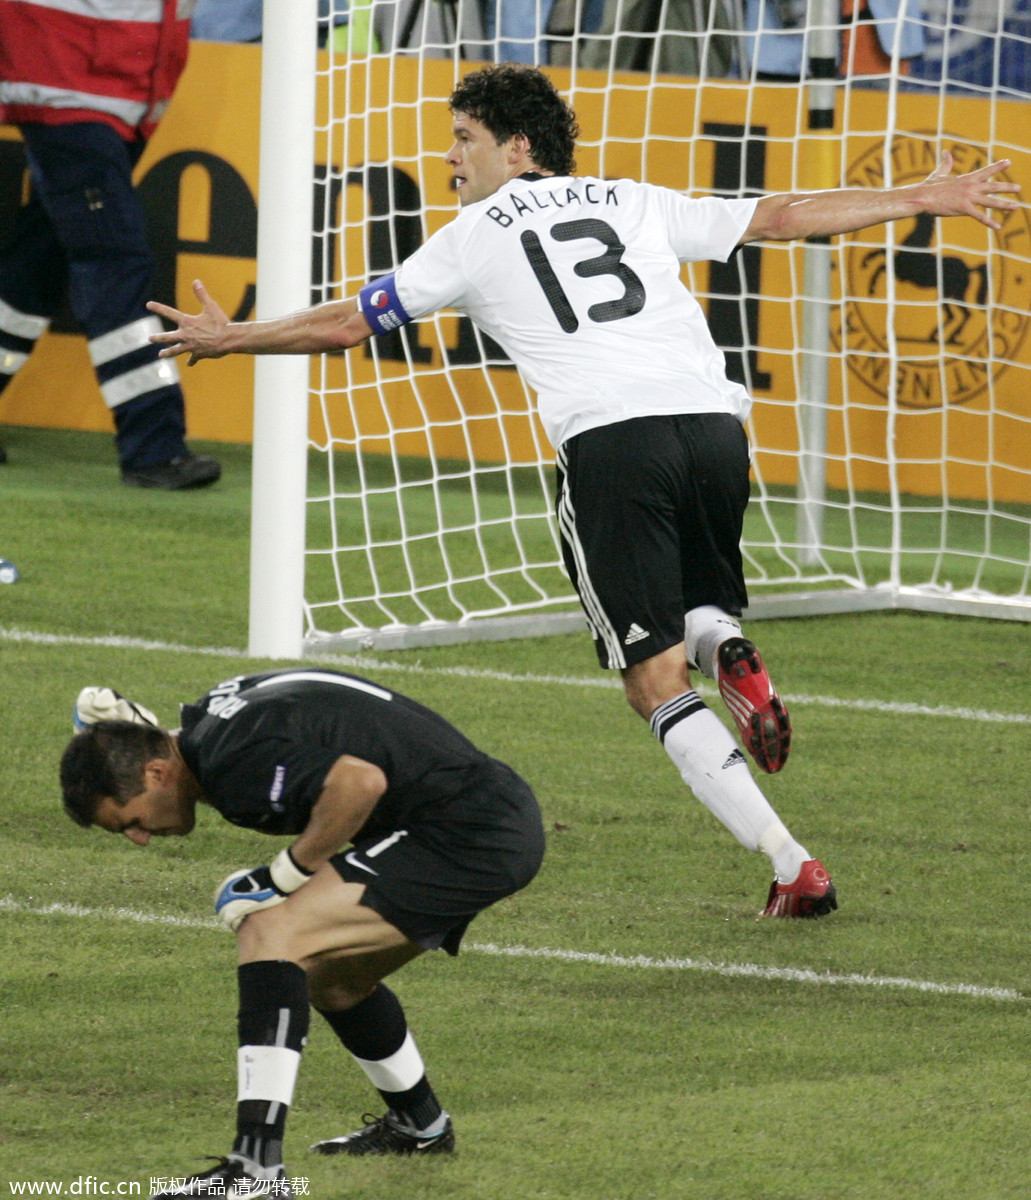 回顾德国葡萄牙经典战役 06年世界杯季军战成